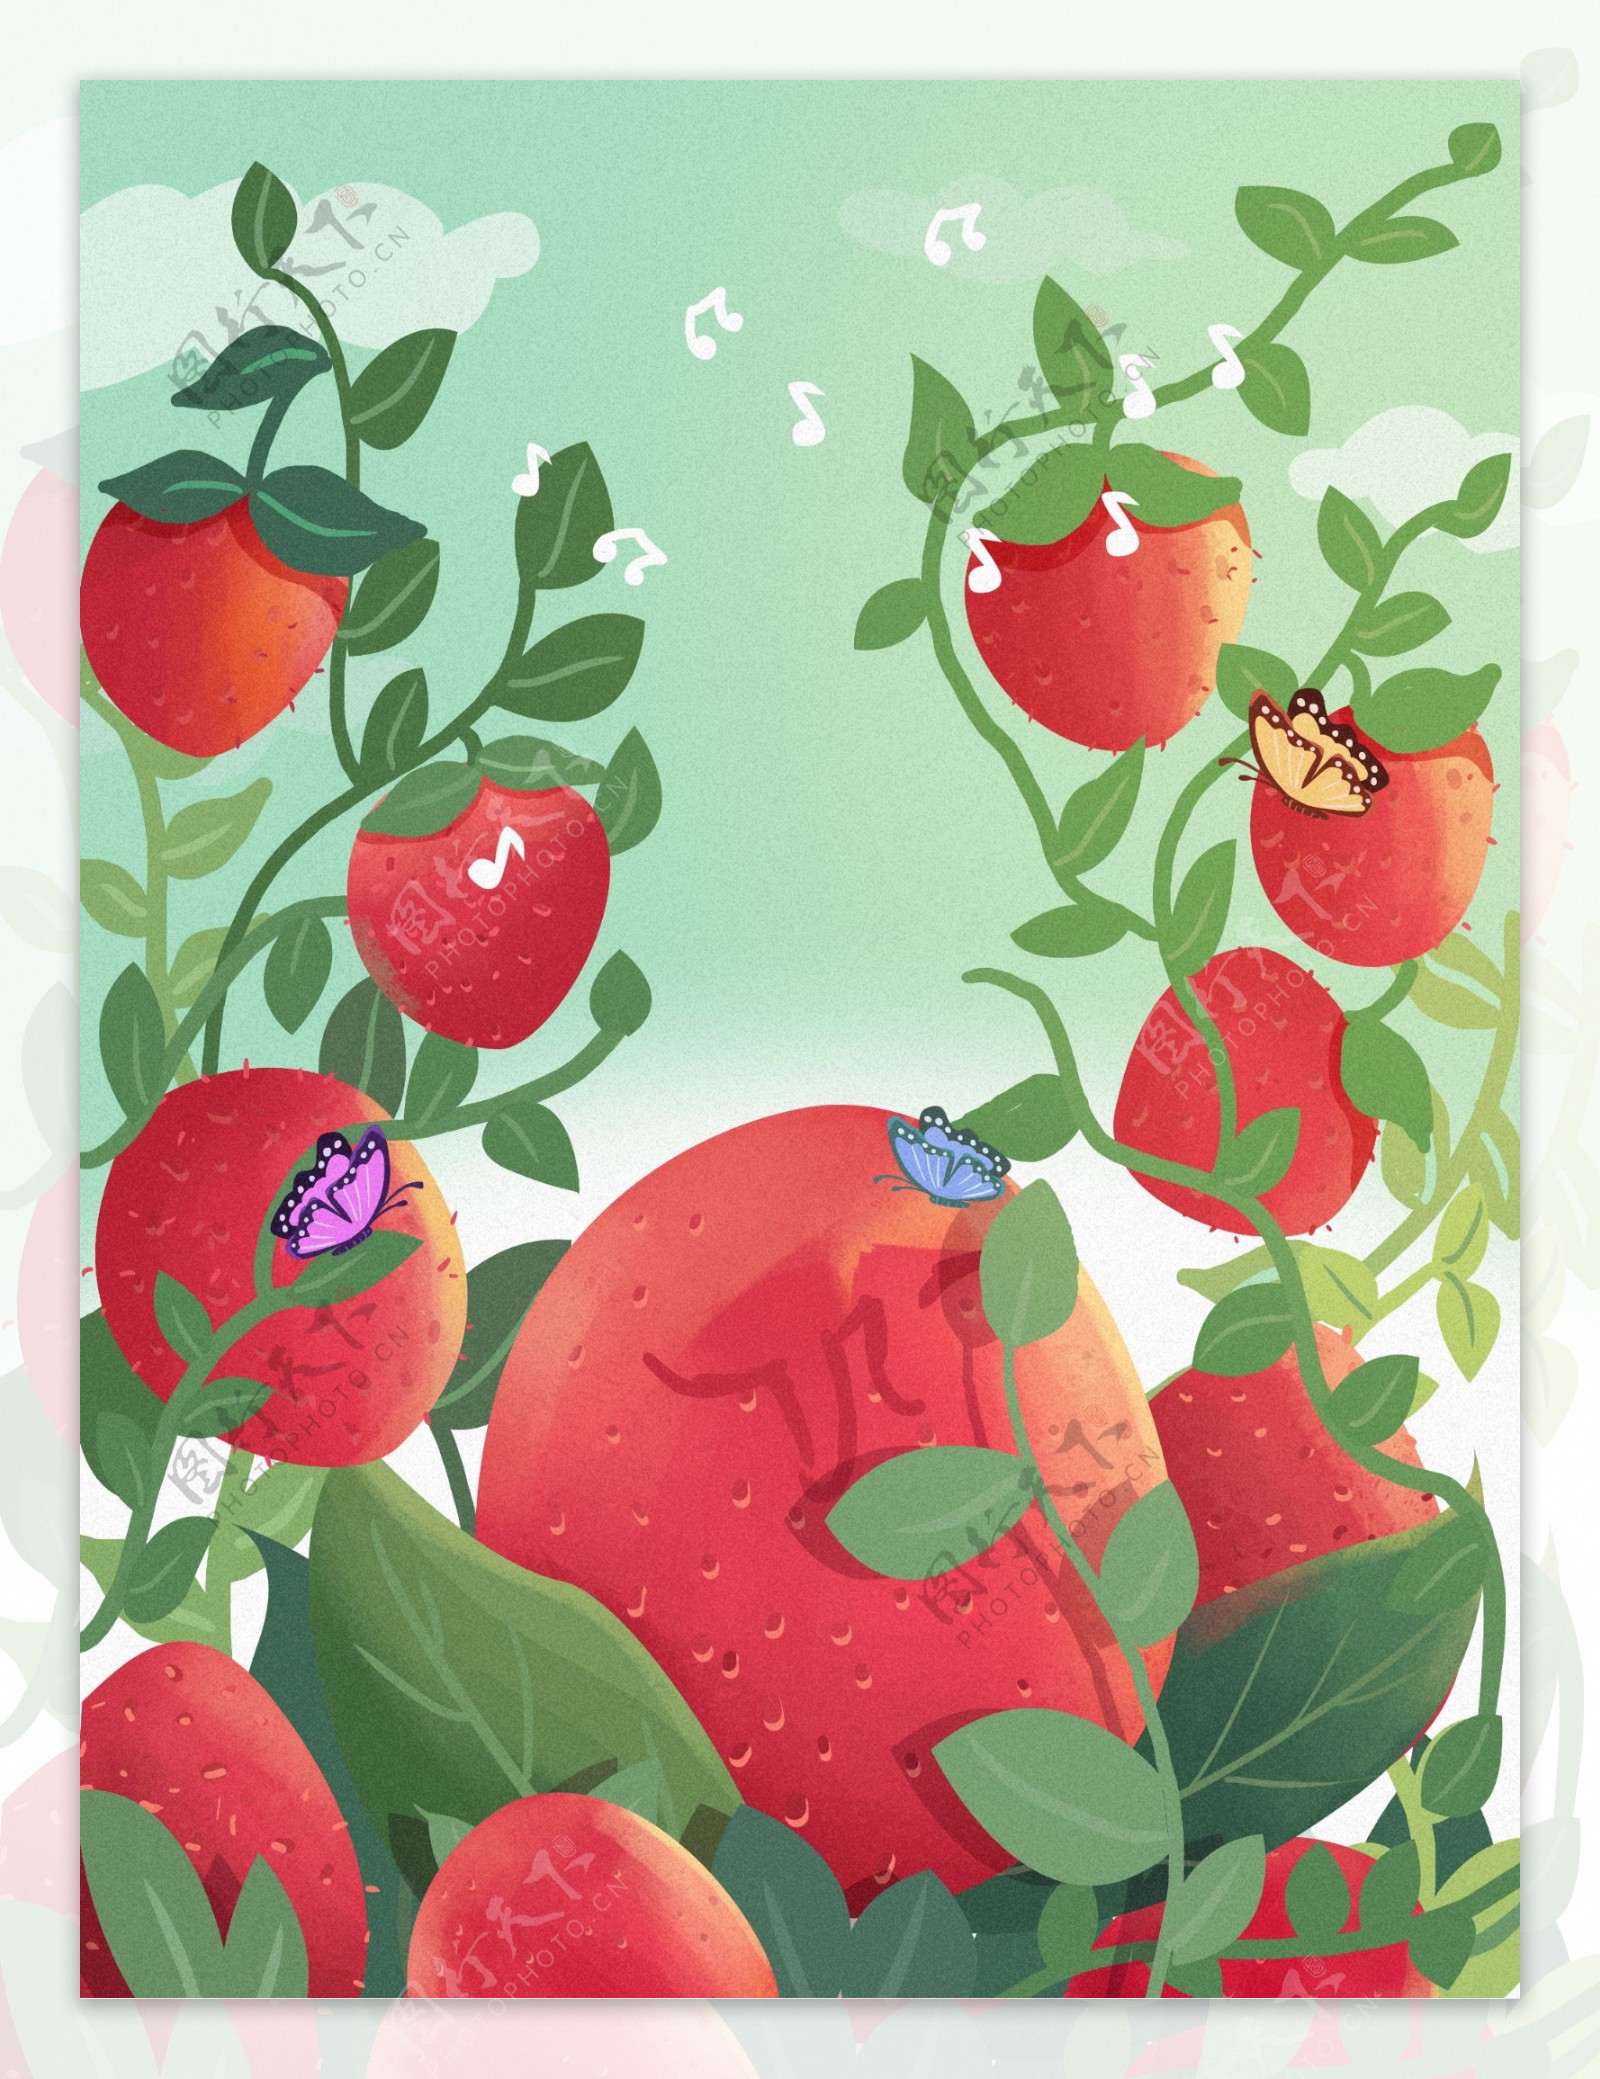 创意水果草莓音符背景设计